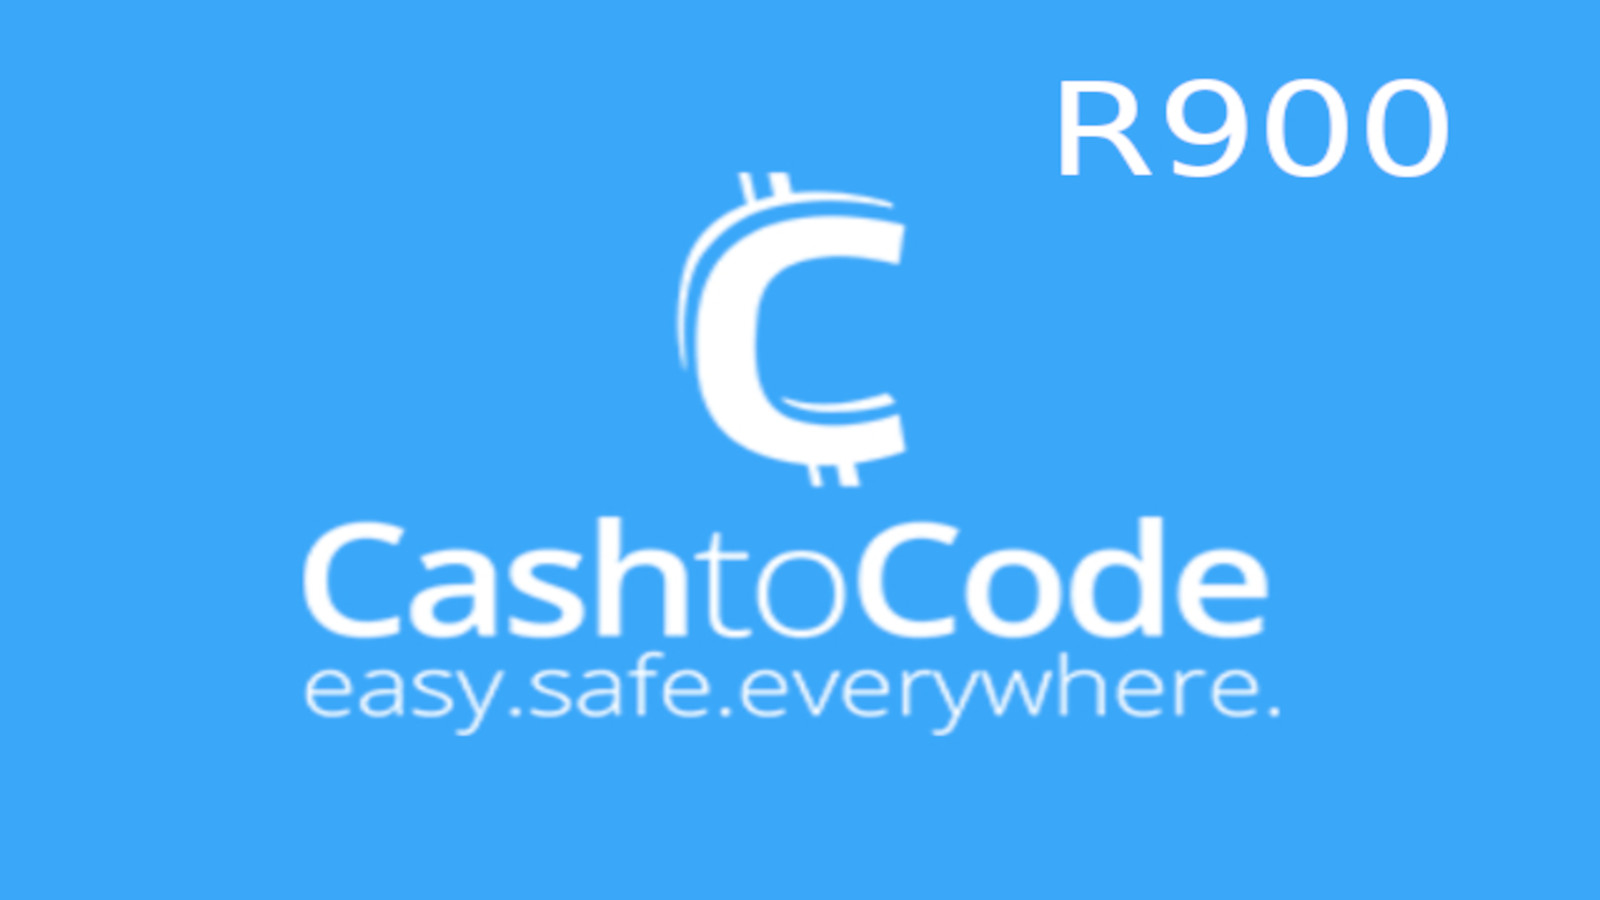 CashtoCode R900 Gift Card ZA USD 54.46